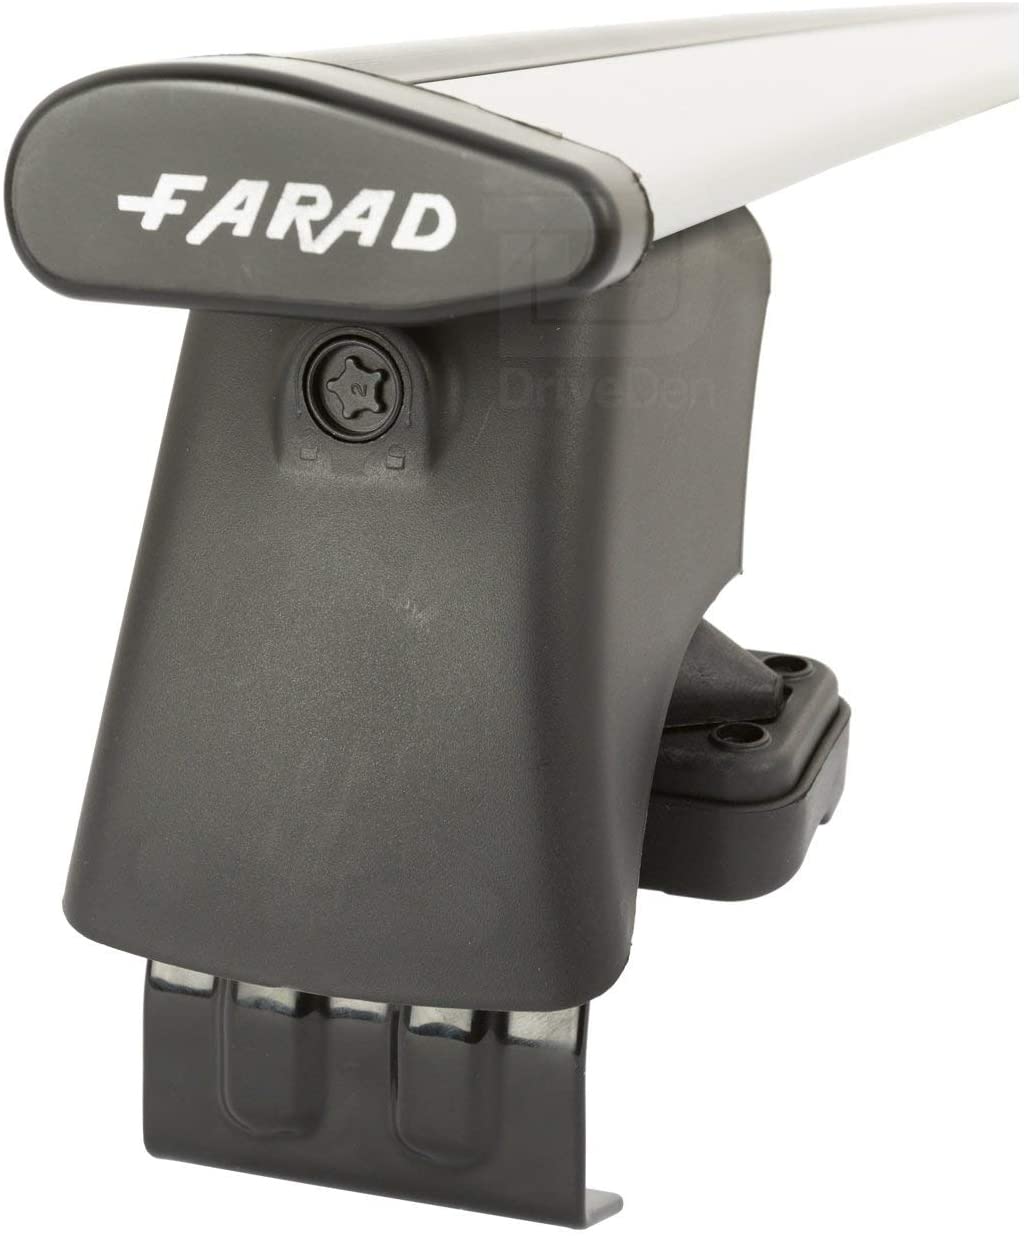 FARAD-Kit H2 per barre portatutto - Hyundai I 20 2020> (senza corrimano)